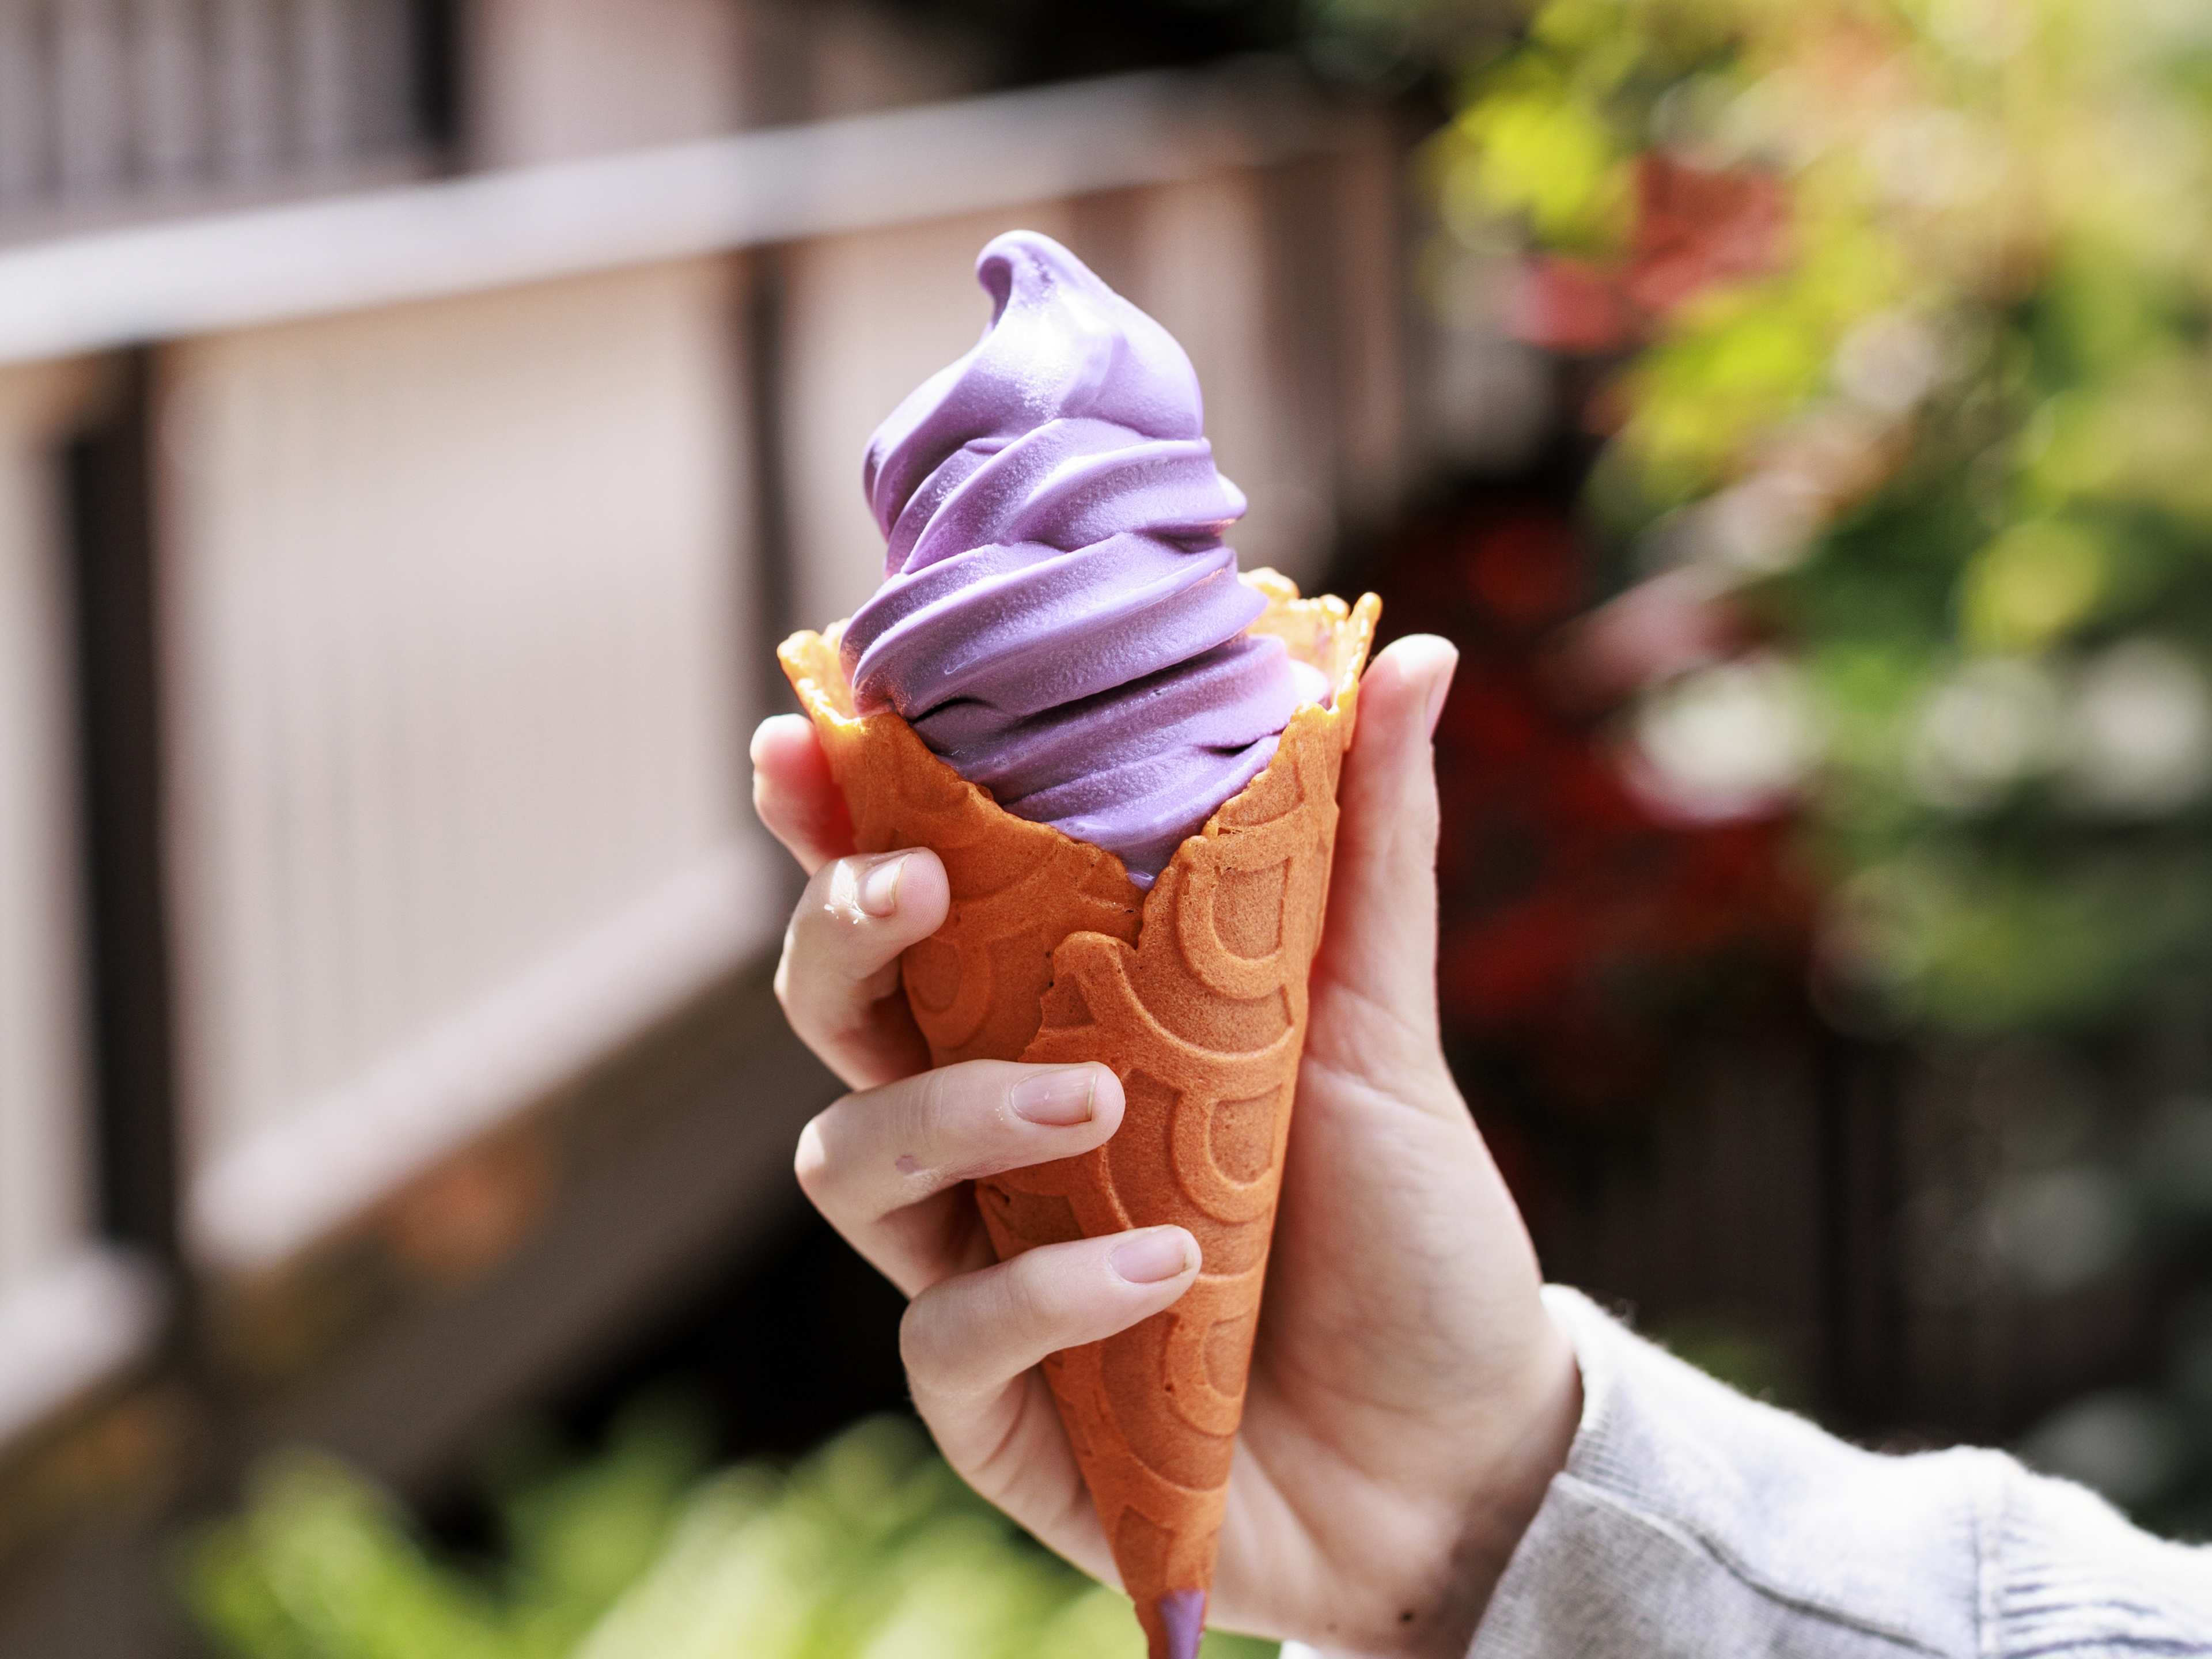 Orange cone stuffed with purple ube soft serve